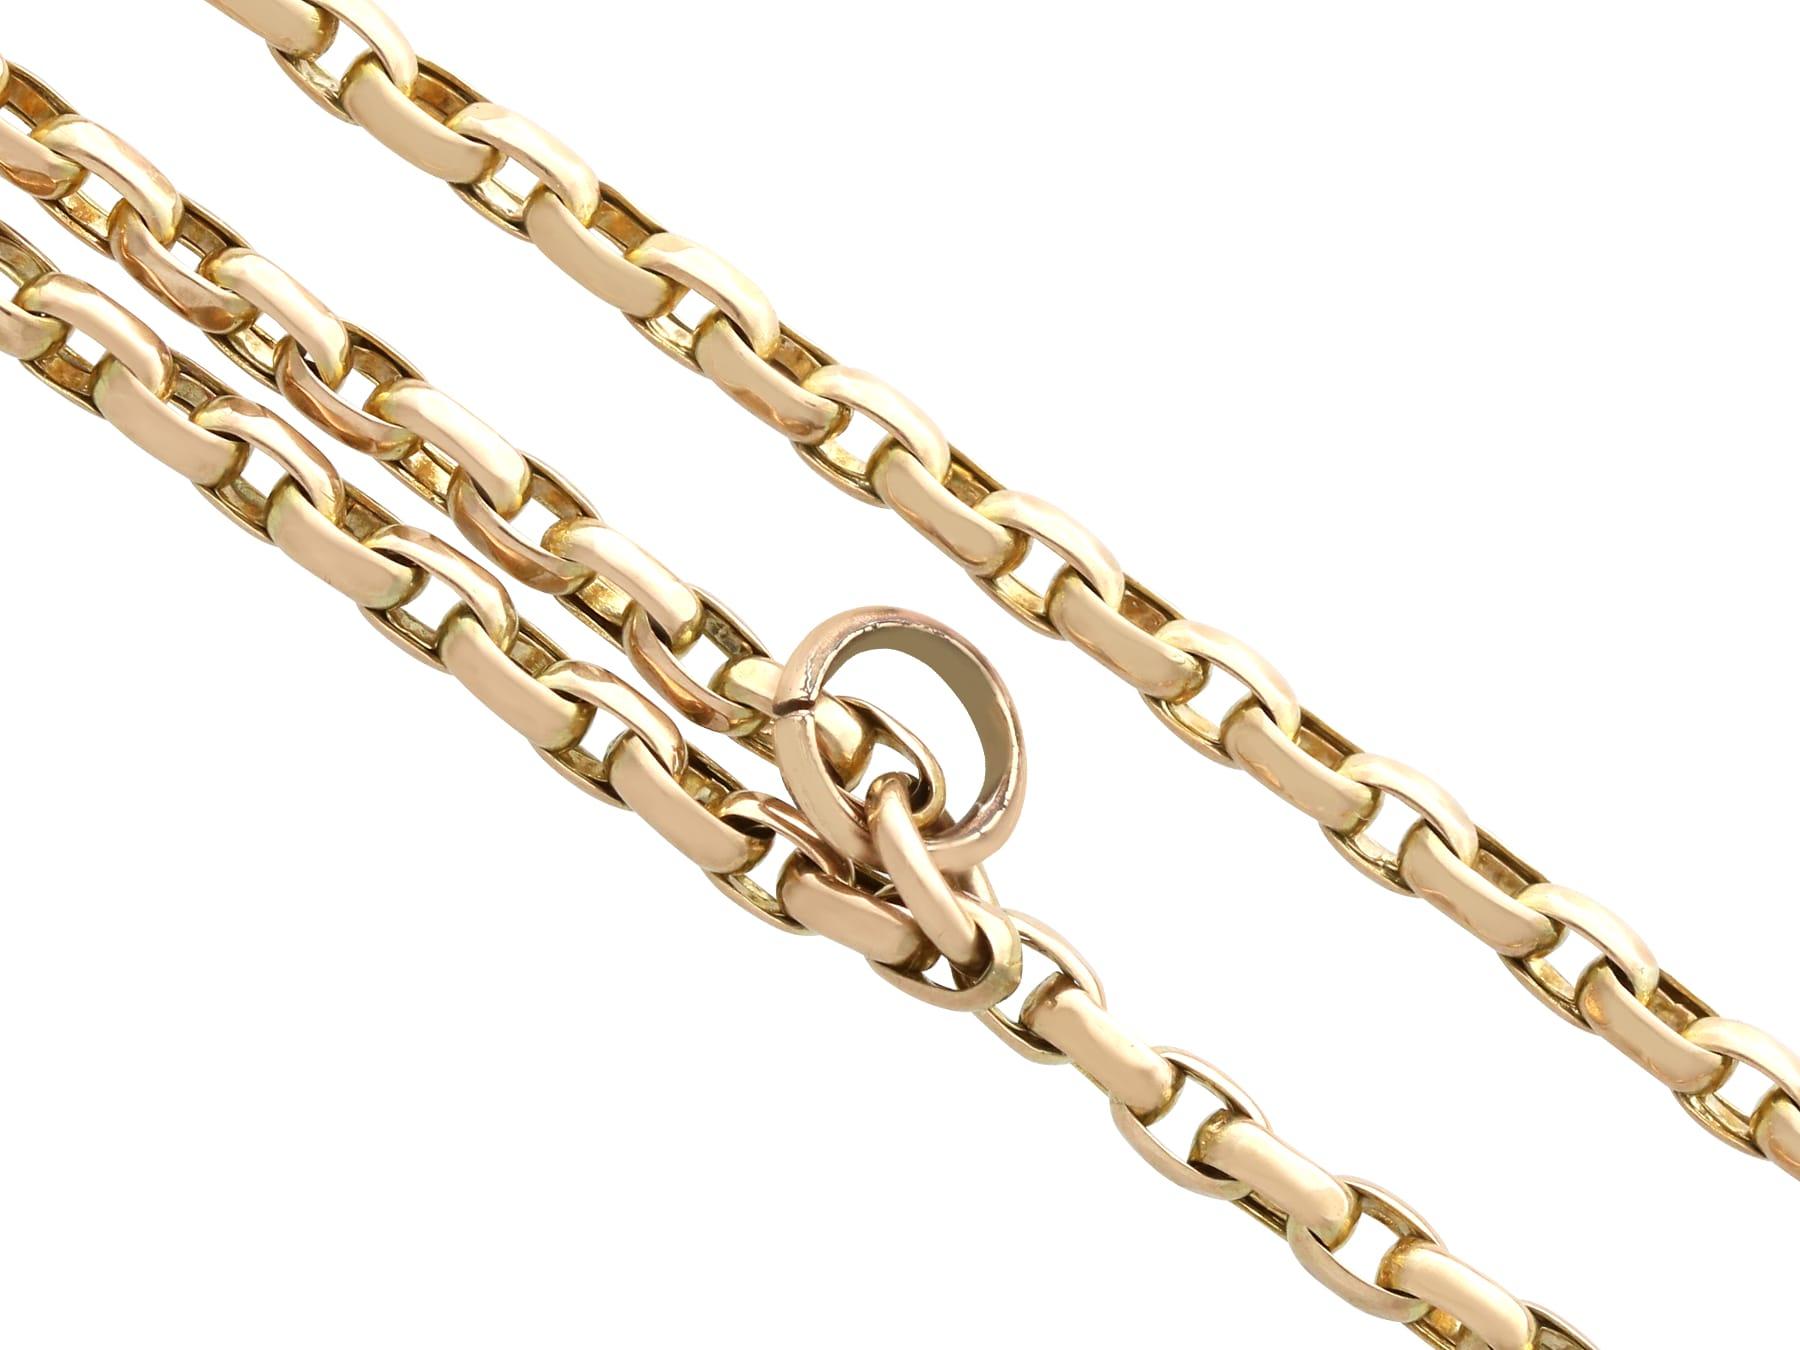 Eine feine und beeindruckende antike 9 Karat Gelbgold Longuard-Kette Halskette; Teil unserer vielfältigen antiken Goldketten Sammlung.

Diese außergewöhnliche, feine und beeindruckende antike Longuard-Kette wurde aus 9 Karat Gelbgold gefertigt.

Die